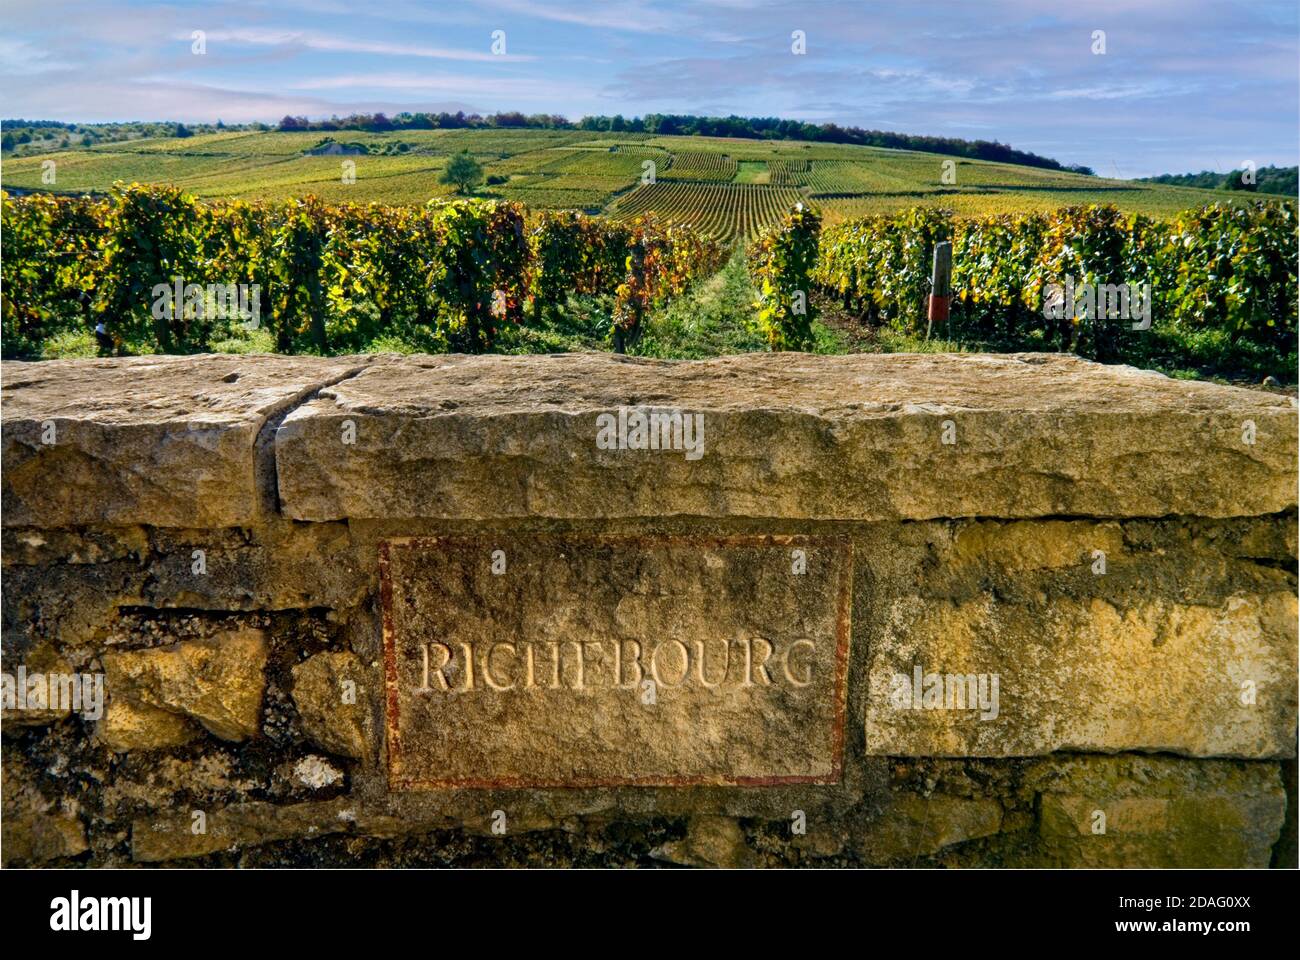 RICHEBOURG plaque de nom de pierre gravée dans le mur limite des vignobles de Richebourg en RDC domaine de la Romanee-Conti, Vosne-Romanee, Côte d'Or, France Banque D'Images